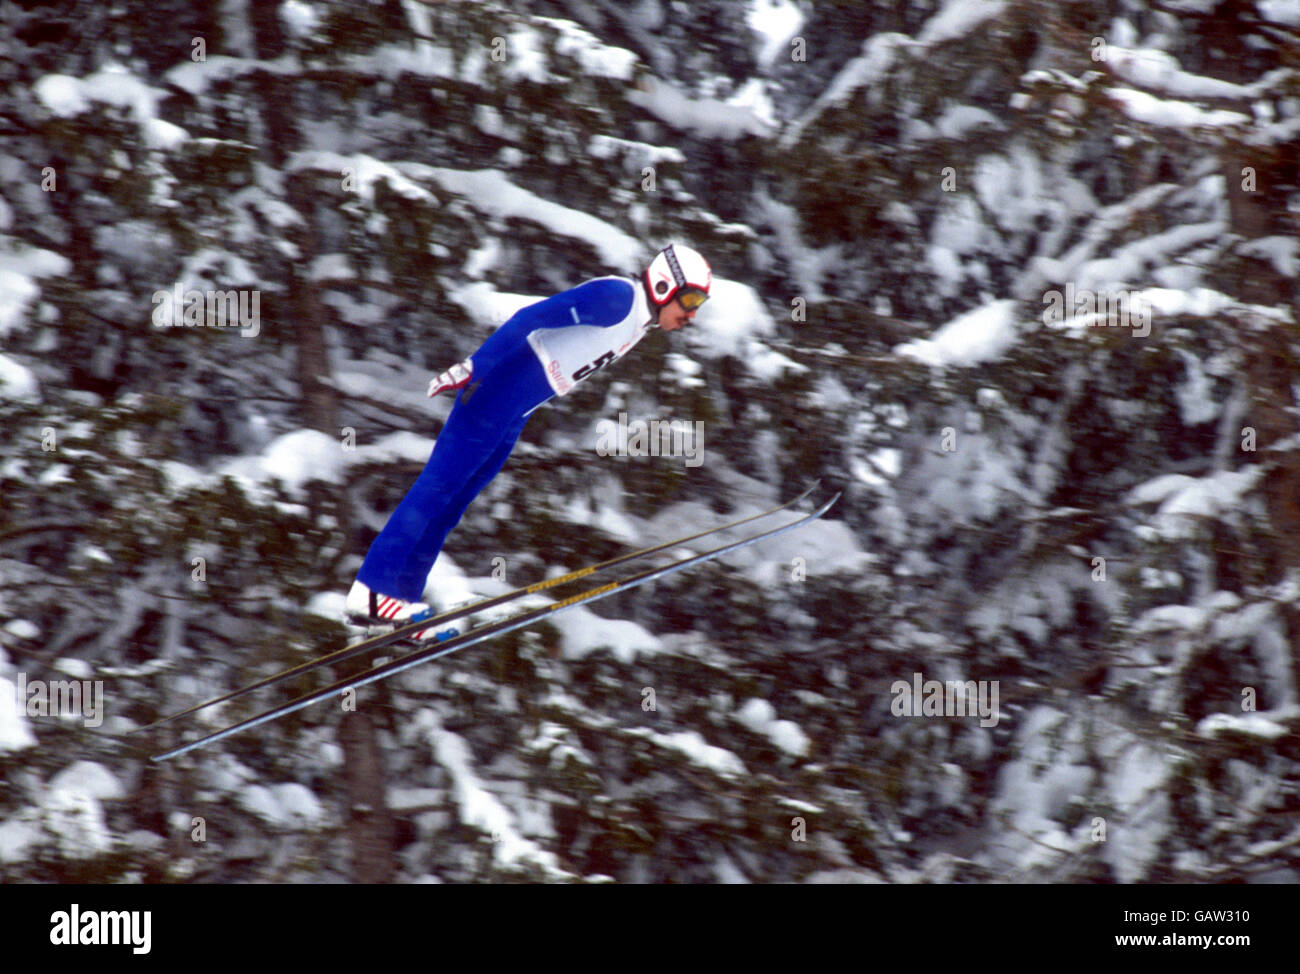 Der finnische Matti Nykanen fliegt auf dem 90 Meter hohen Hügel in Richtung Gold. Er gewann auch die Silbermedaille für die 70m-Schanze Stockfoto